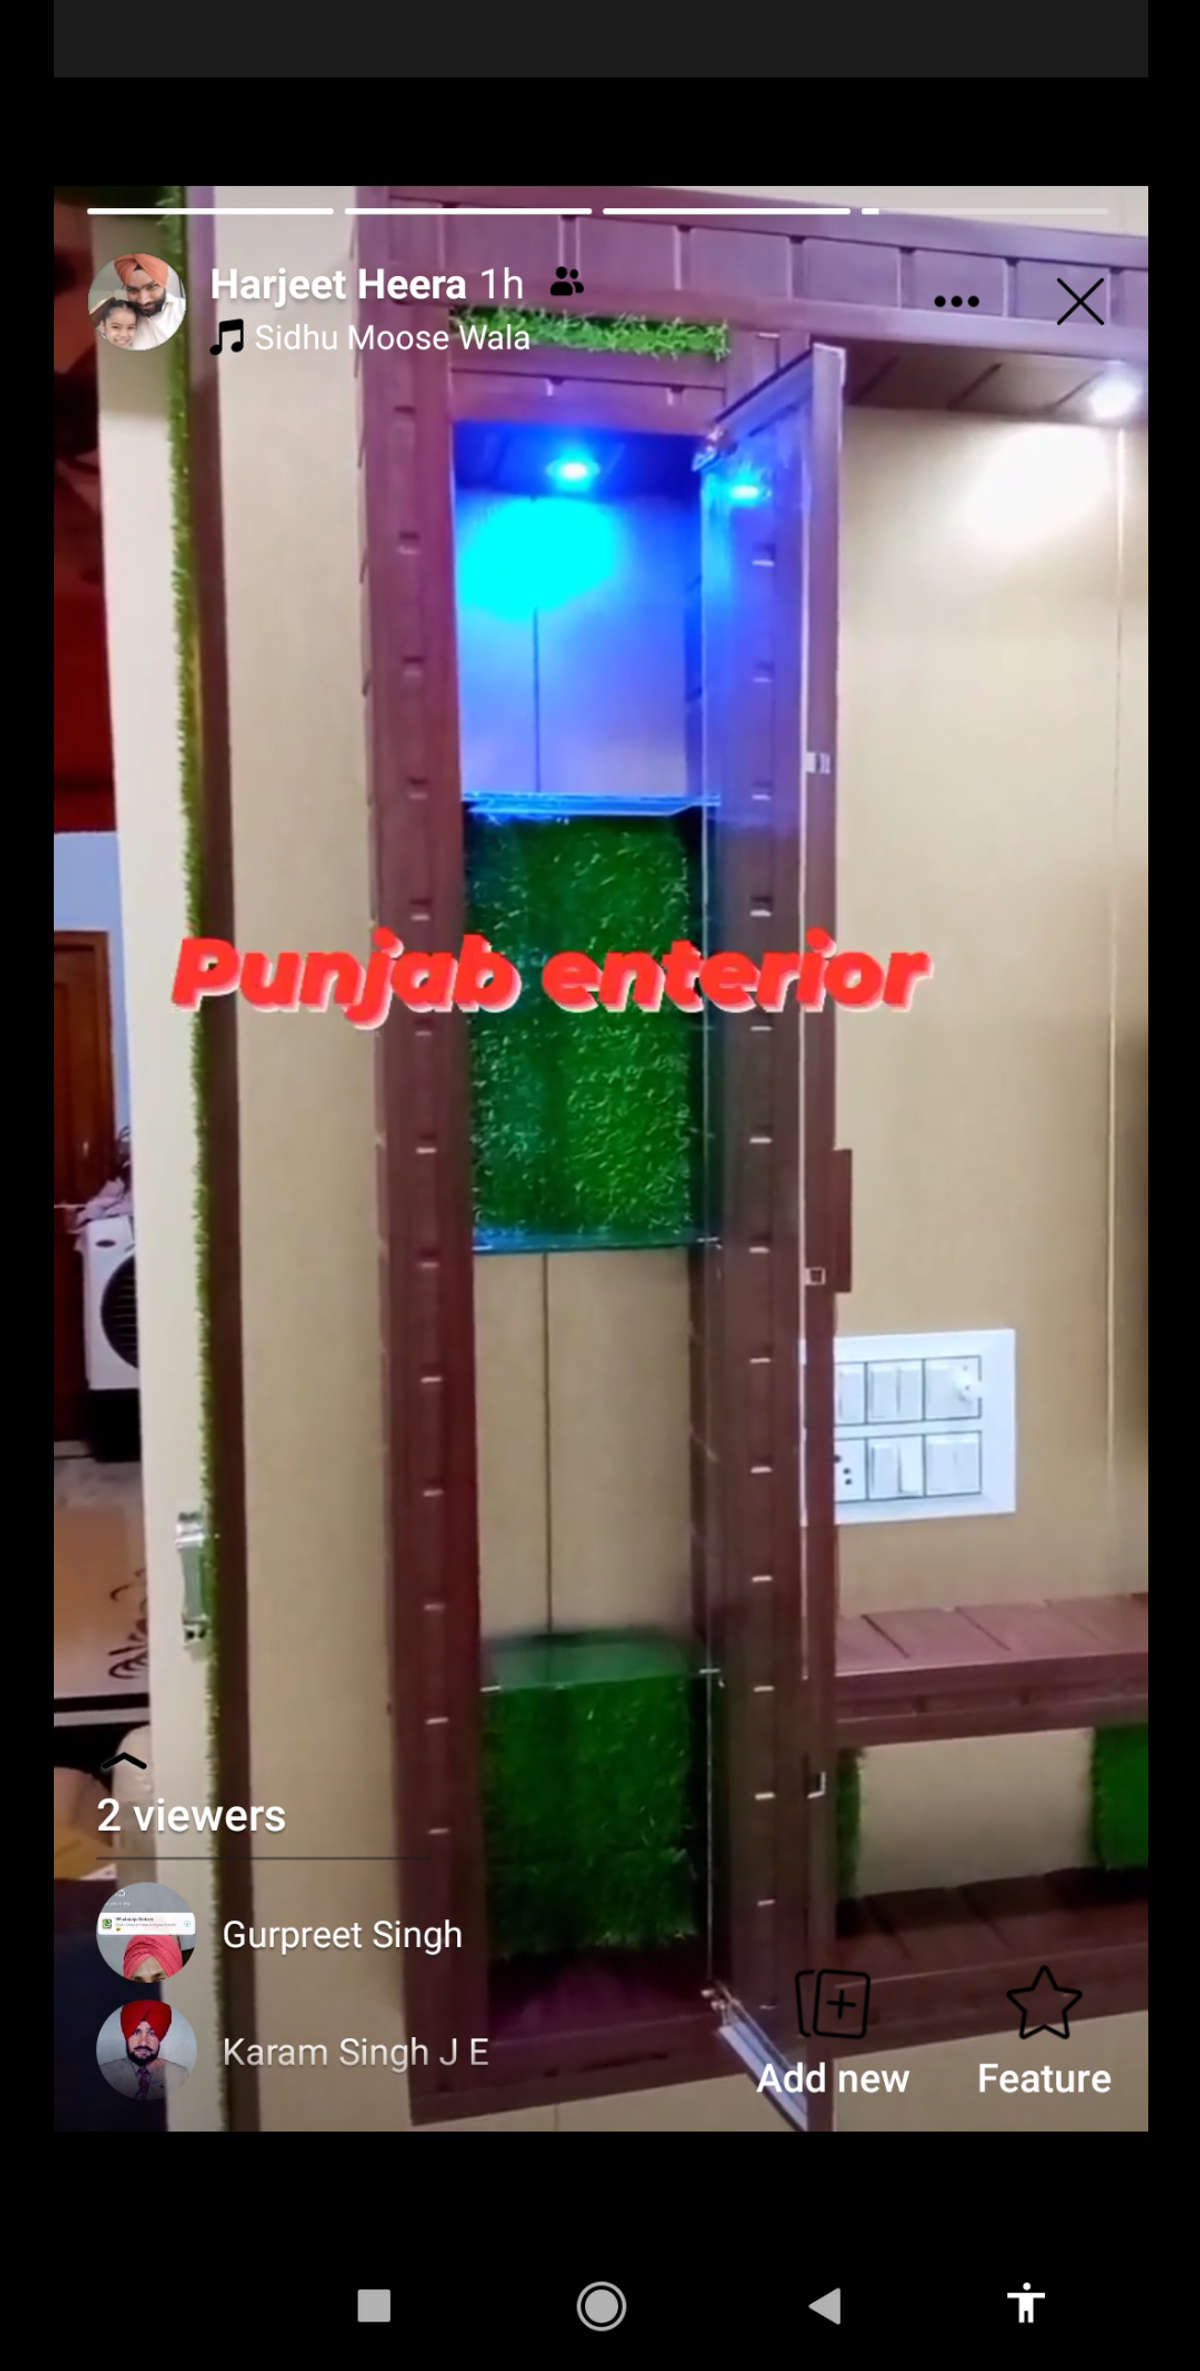 Punjab enterior 8826483102 #2640 heera